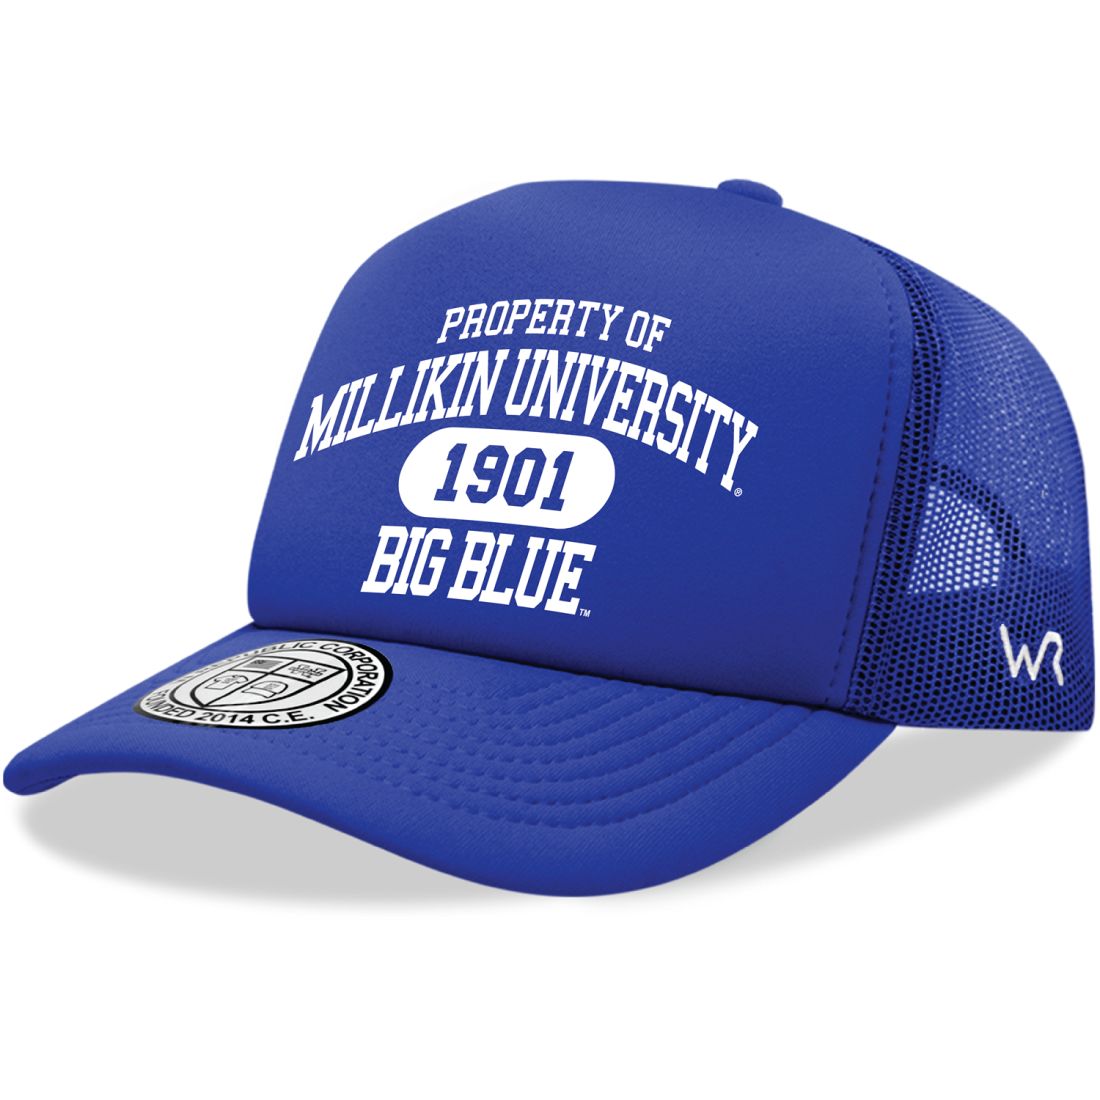 Millikin University Big Blue Property Foam Trucker Hats